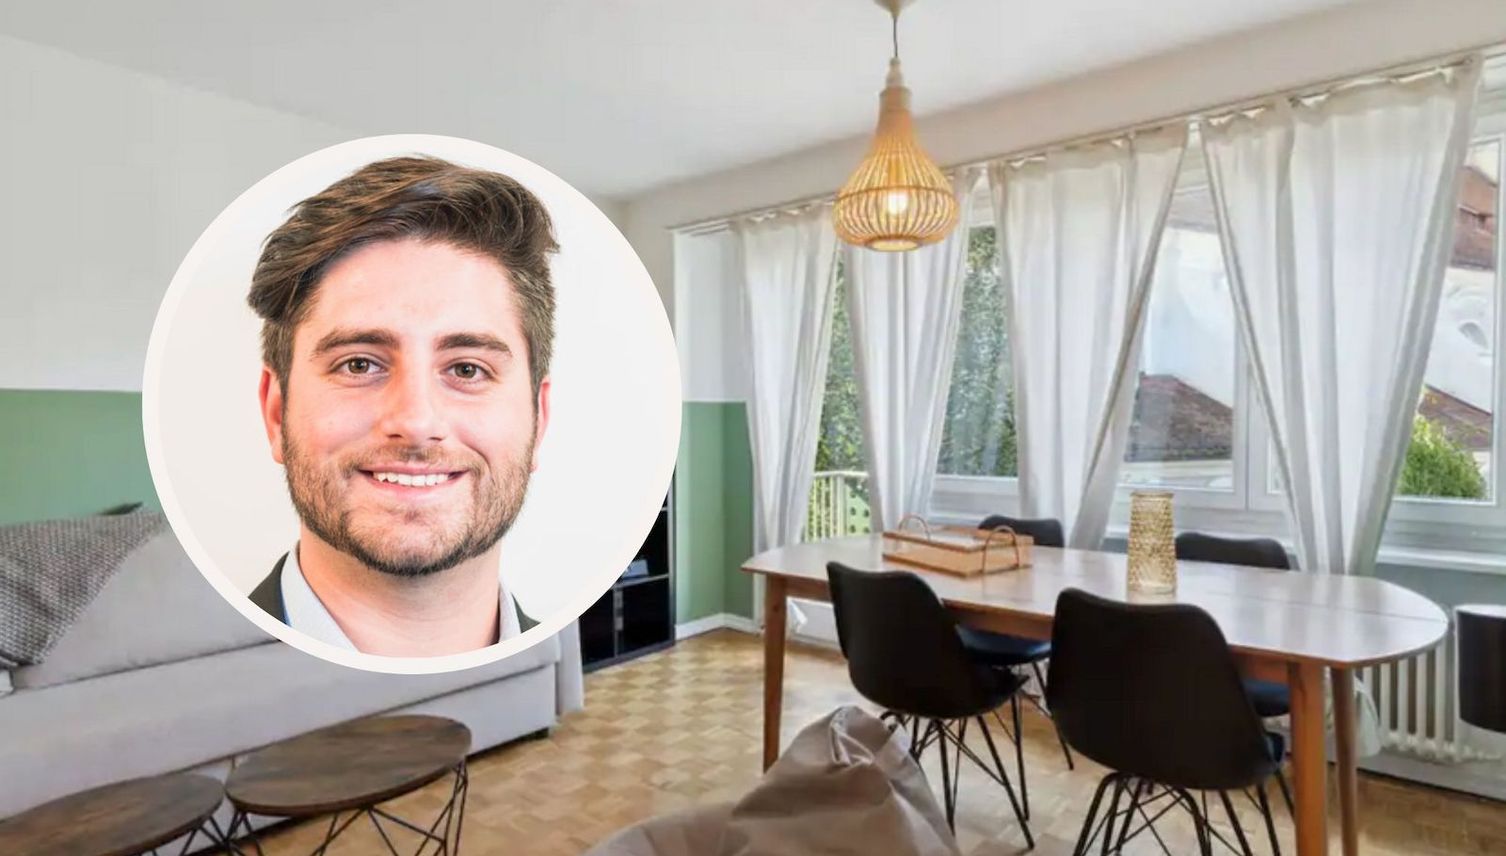 Luzerner Touristen-Wohnungen: Airbnb-Vermieter kontert